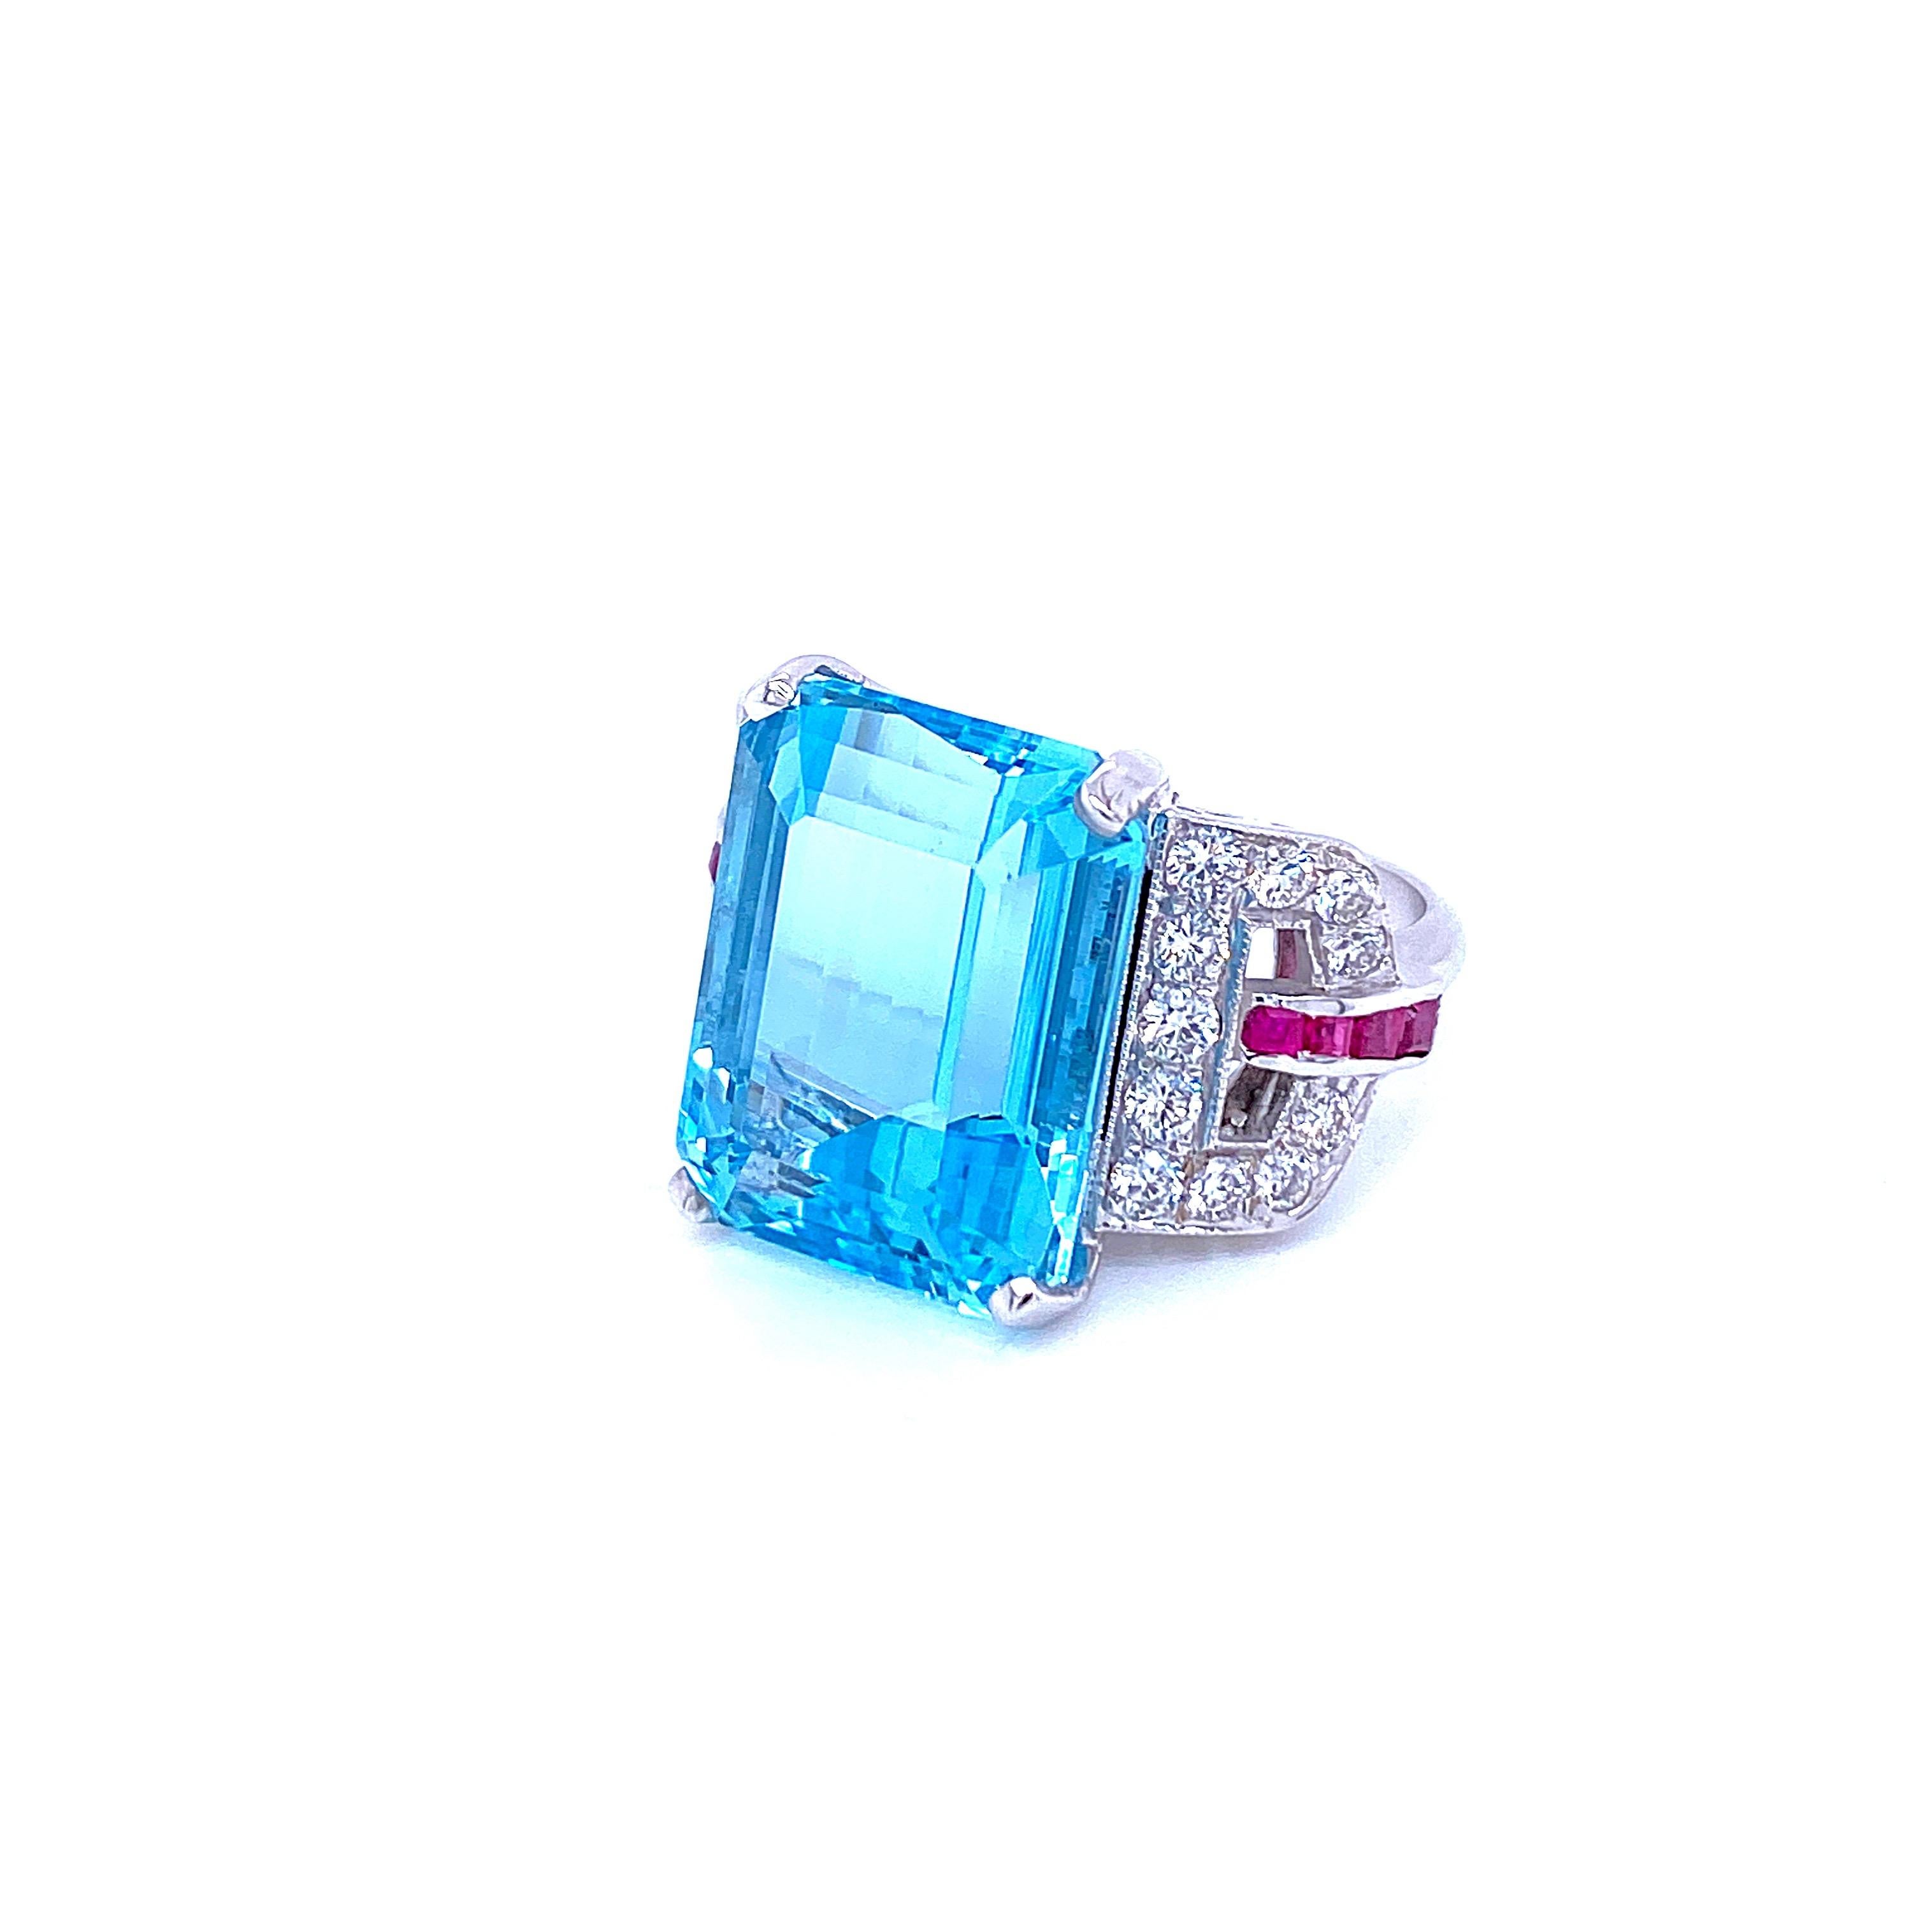 16 carat aquamarine ring